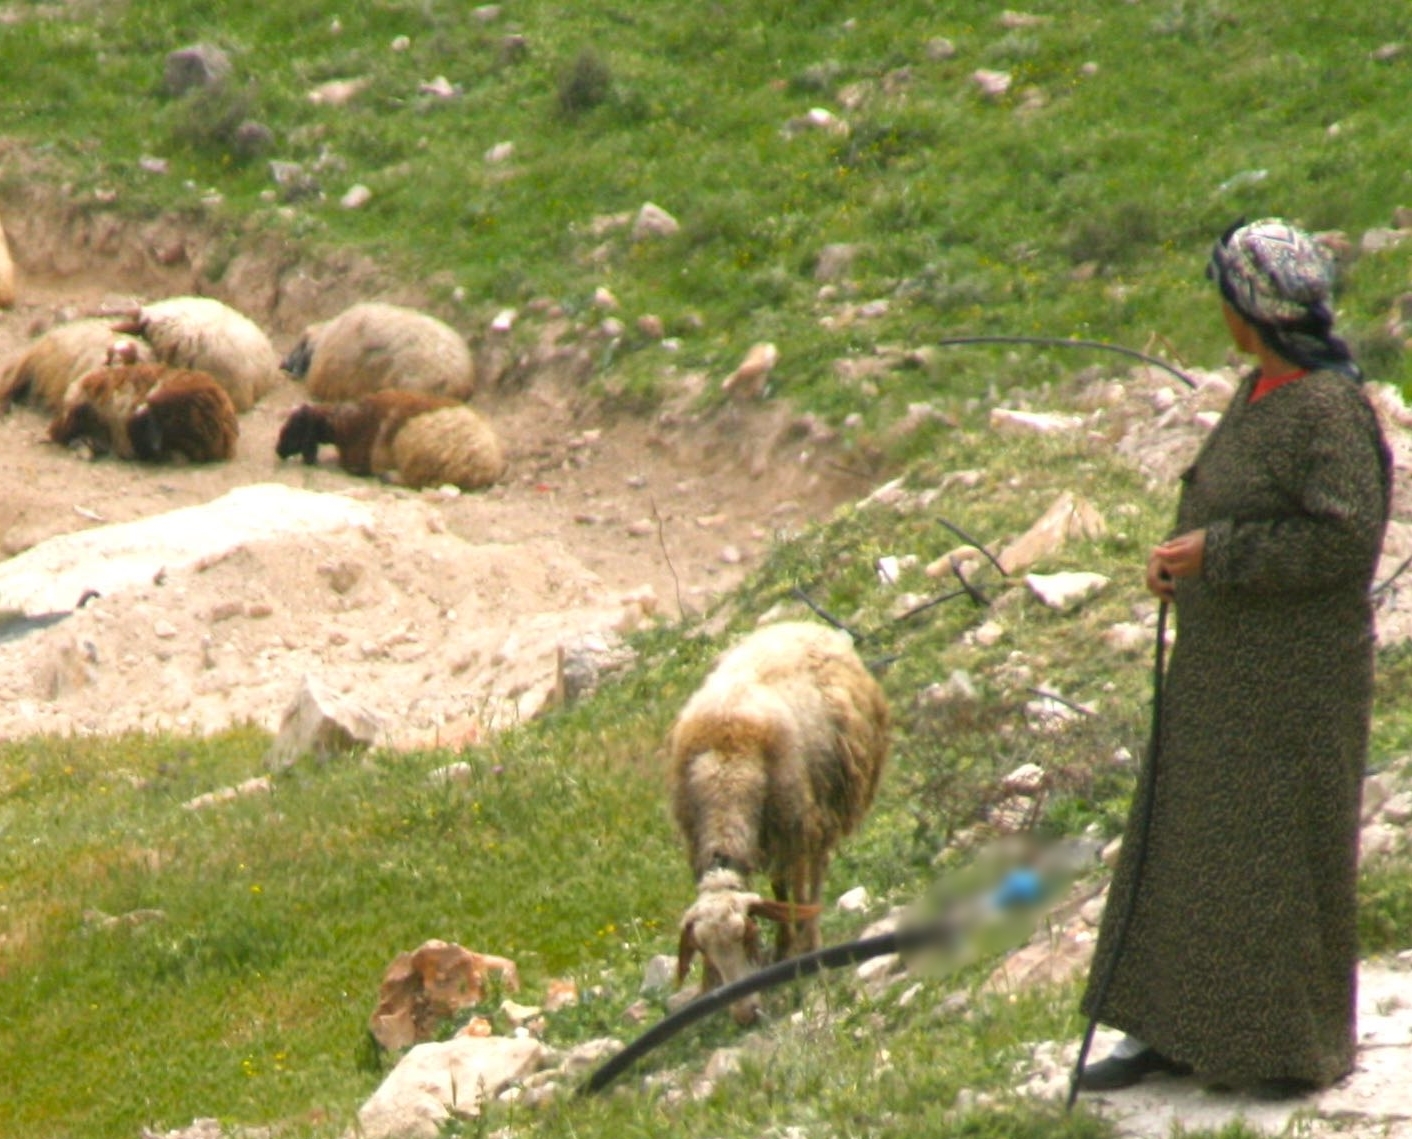 Shepherdess near Jerusalem